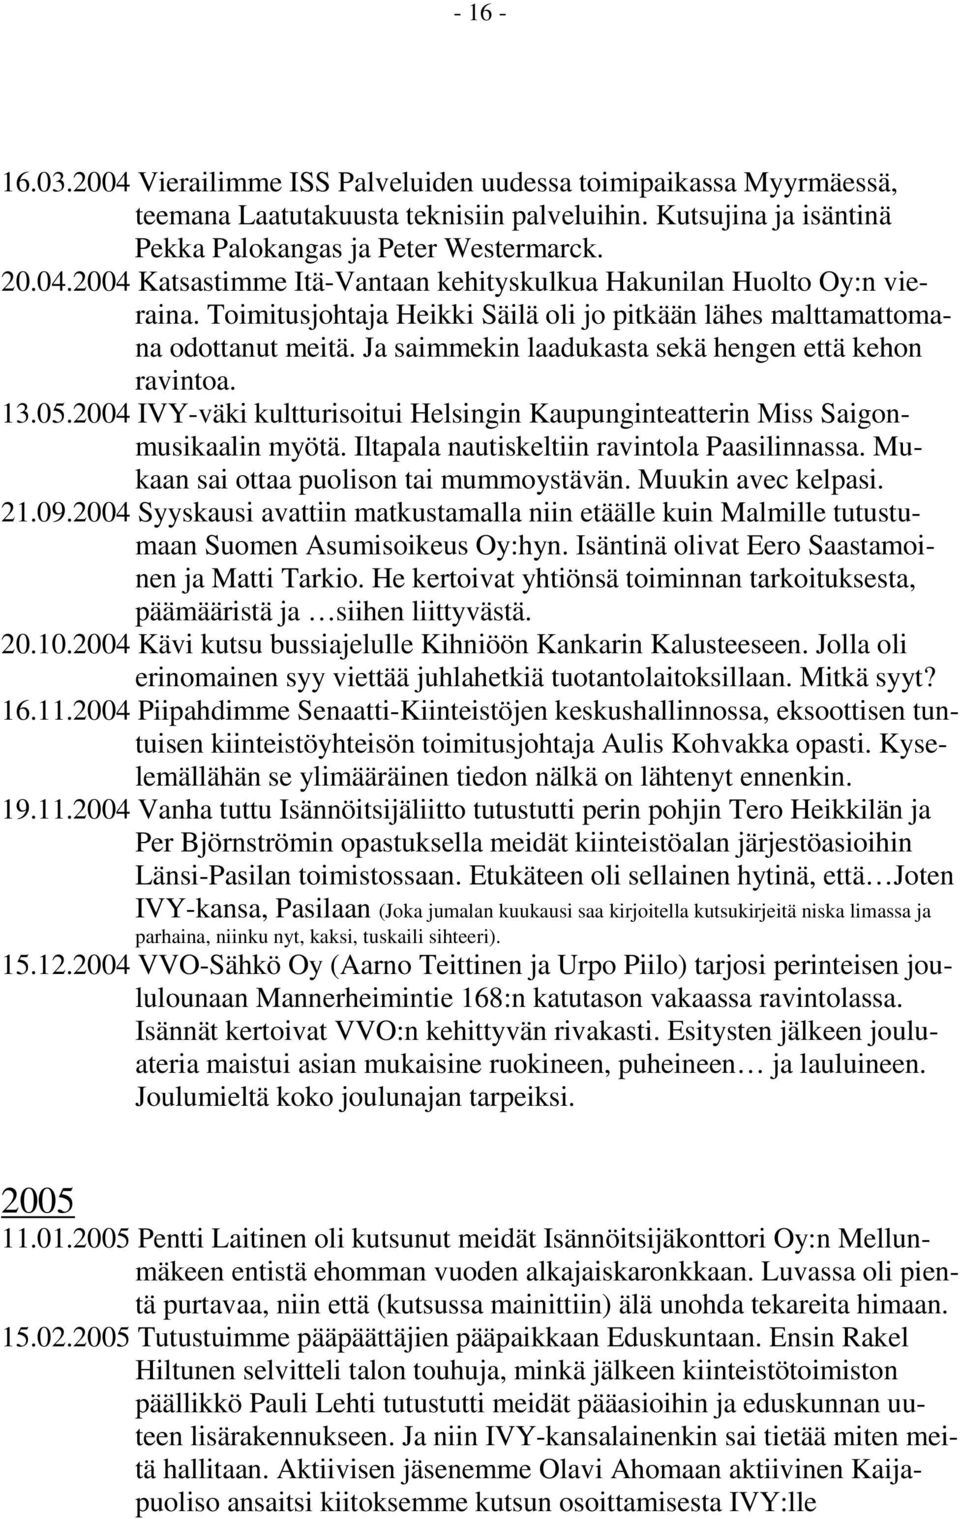 2004 IVY-väki kultturisoitui Helsingin Kaupunginteatterin Miss Saigonmusikaalin myötä. Iltapala nautiskeltiin ravintola Paasilinnassa. Mukaan sai ottaa puolison tai mummoystävän. Muukin avec kelpasi.